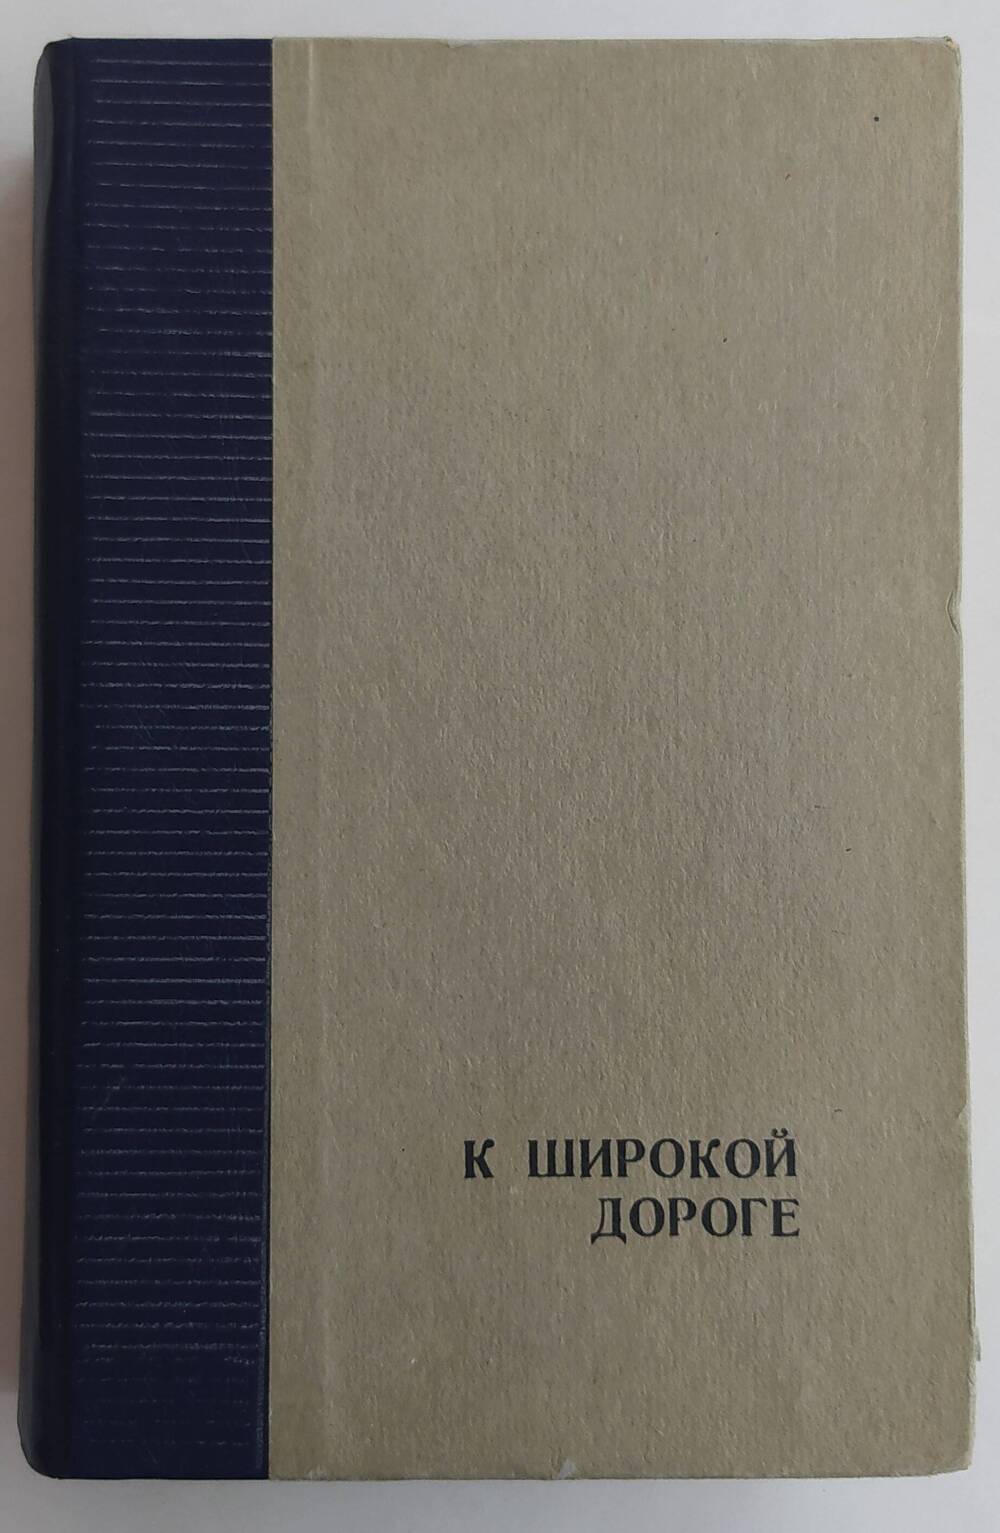 Книга  А. Бибика «К широкой дороге» роман, выпущен издательством - Ставропольским книжным издательством г. Ставрополь в 1984 г.